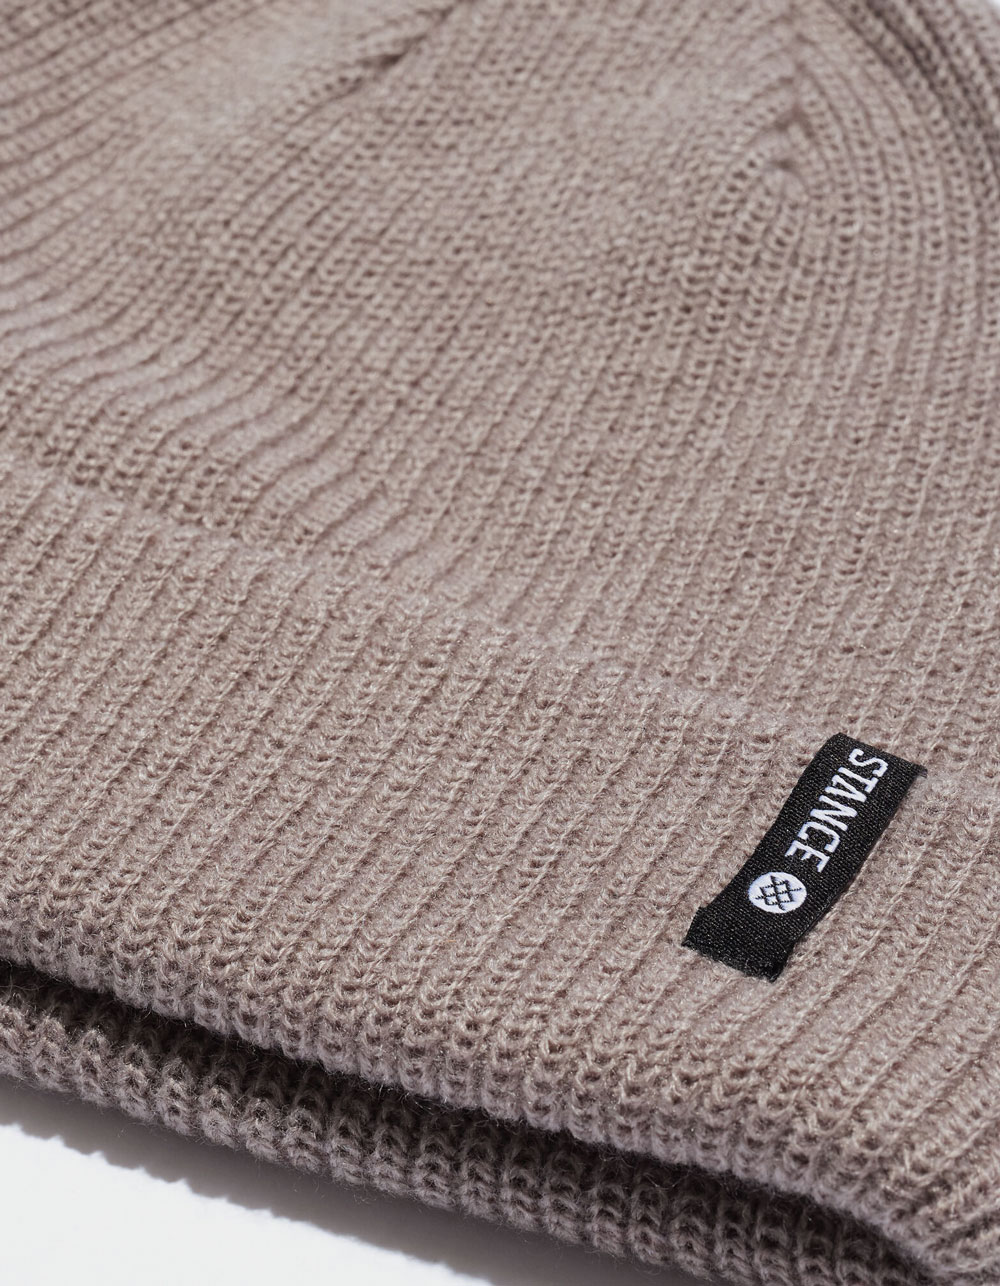 STANCE Icon 2 Beanie là một mũ len thời trang và tiện dụng. Với kiểu dáng đẹp mắt và chất lượng tốt, sản phẩm sẽ mang đến cho bạn sự ấm áp và phong cách. Hãy cùng xem hình ảnh để tìm hiểu thêm về chi tiết sản phẩm và cách mix đồ để tạo nên phong cách cá tính của riêng bạn.